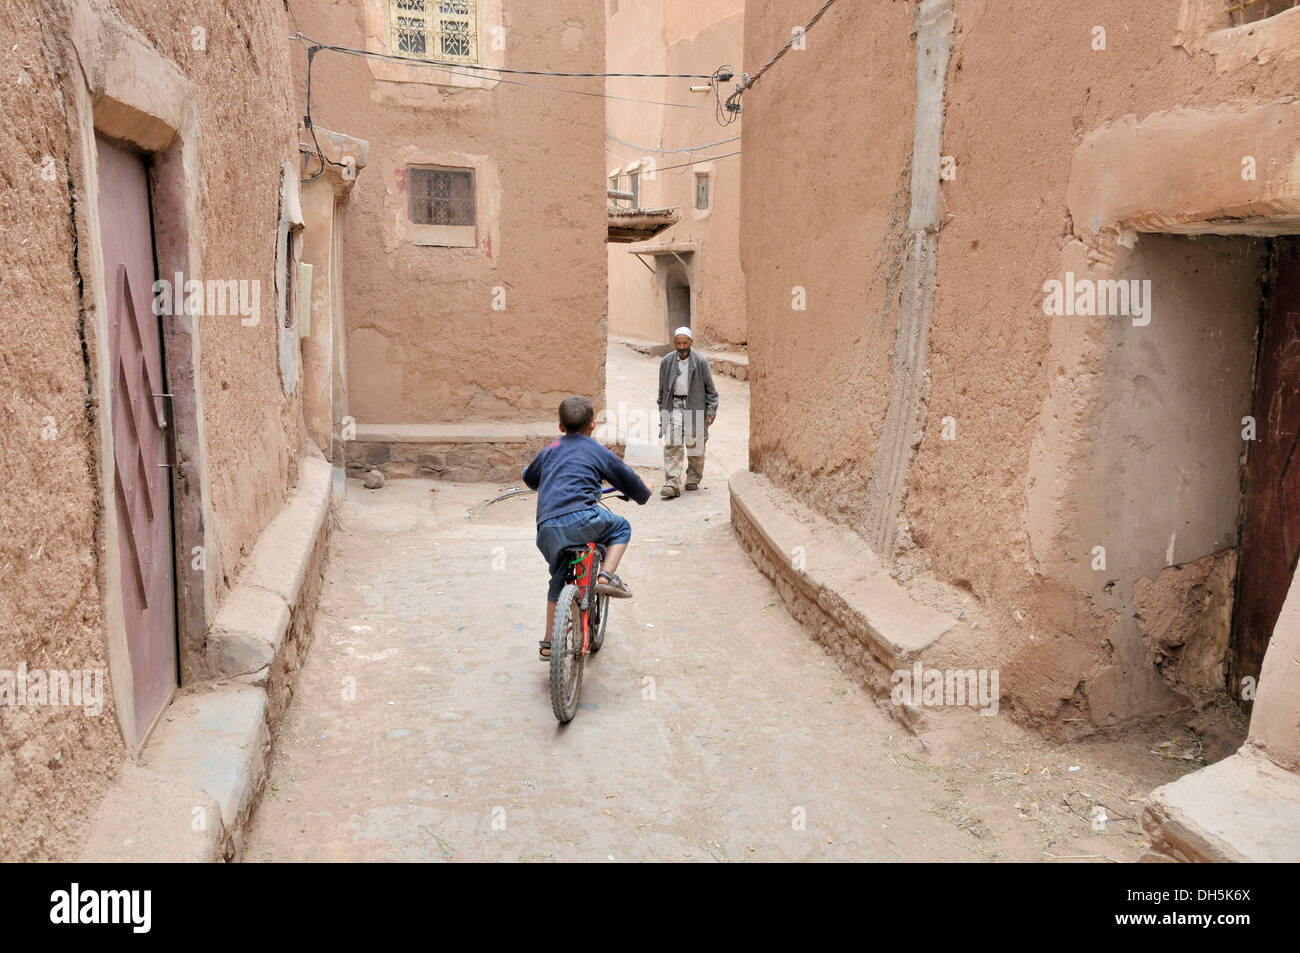 Garçon avec vélo et un vieil homme, l'architecture de pisé de terre dans la vieille ville ou Médina, Ouarzazate, Maroc, Afrique Banque D'Images